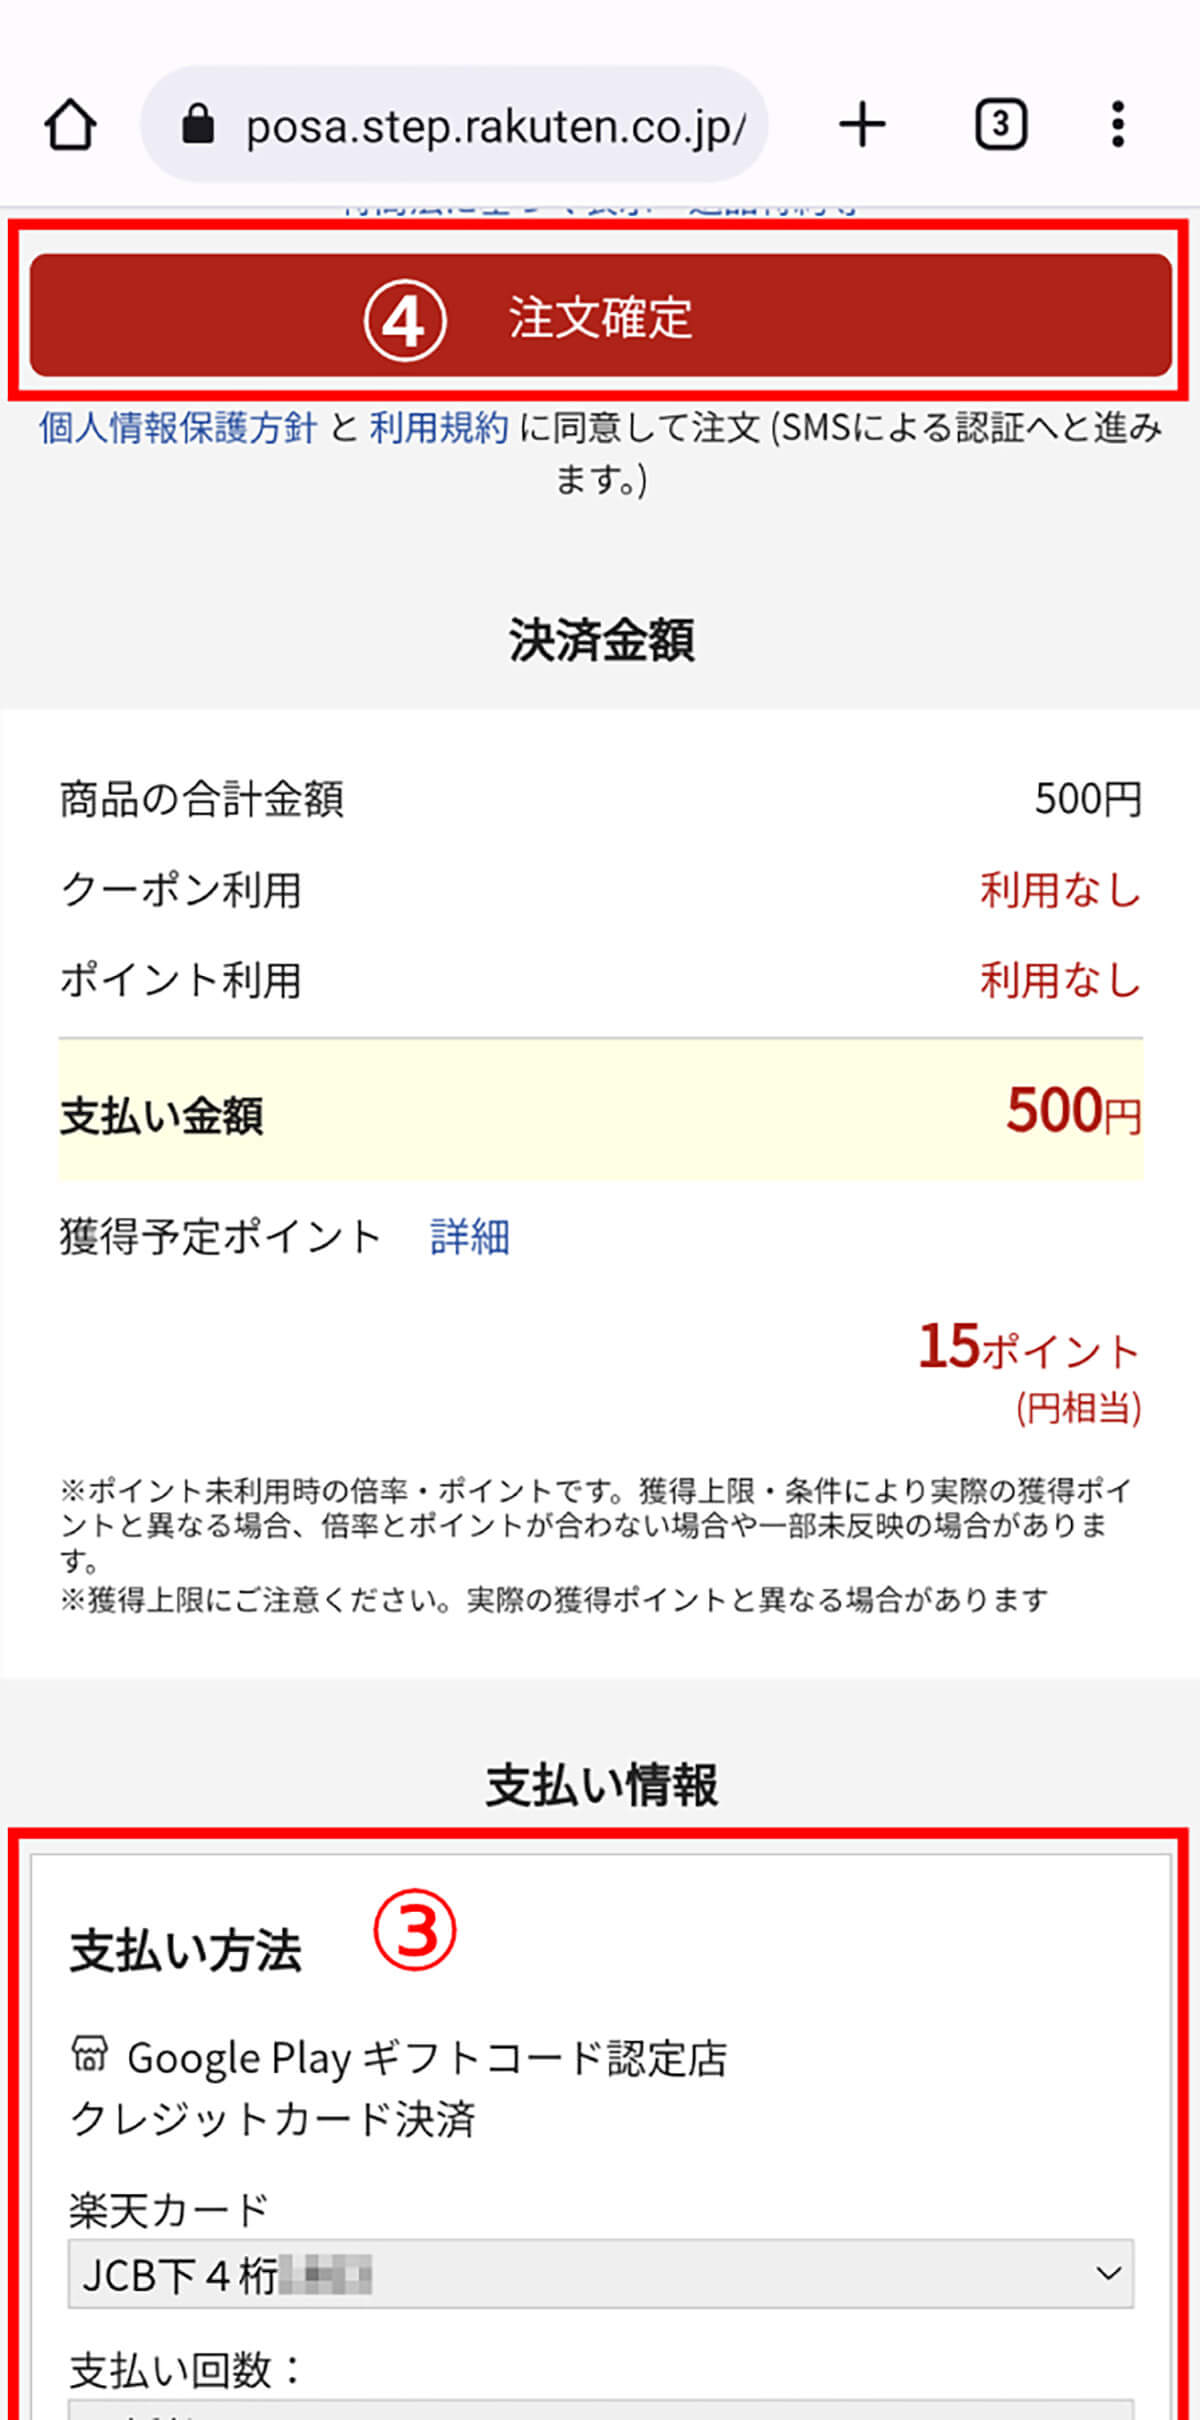 Google Play ギフトコード 100円